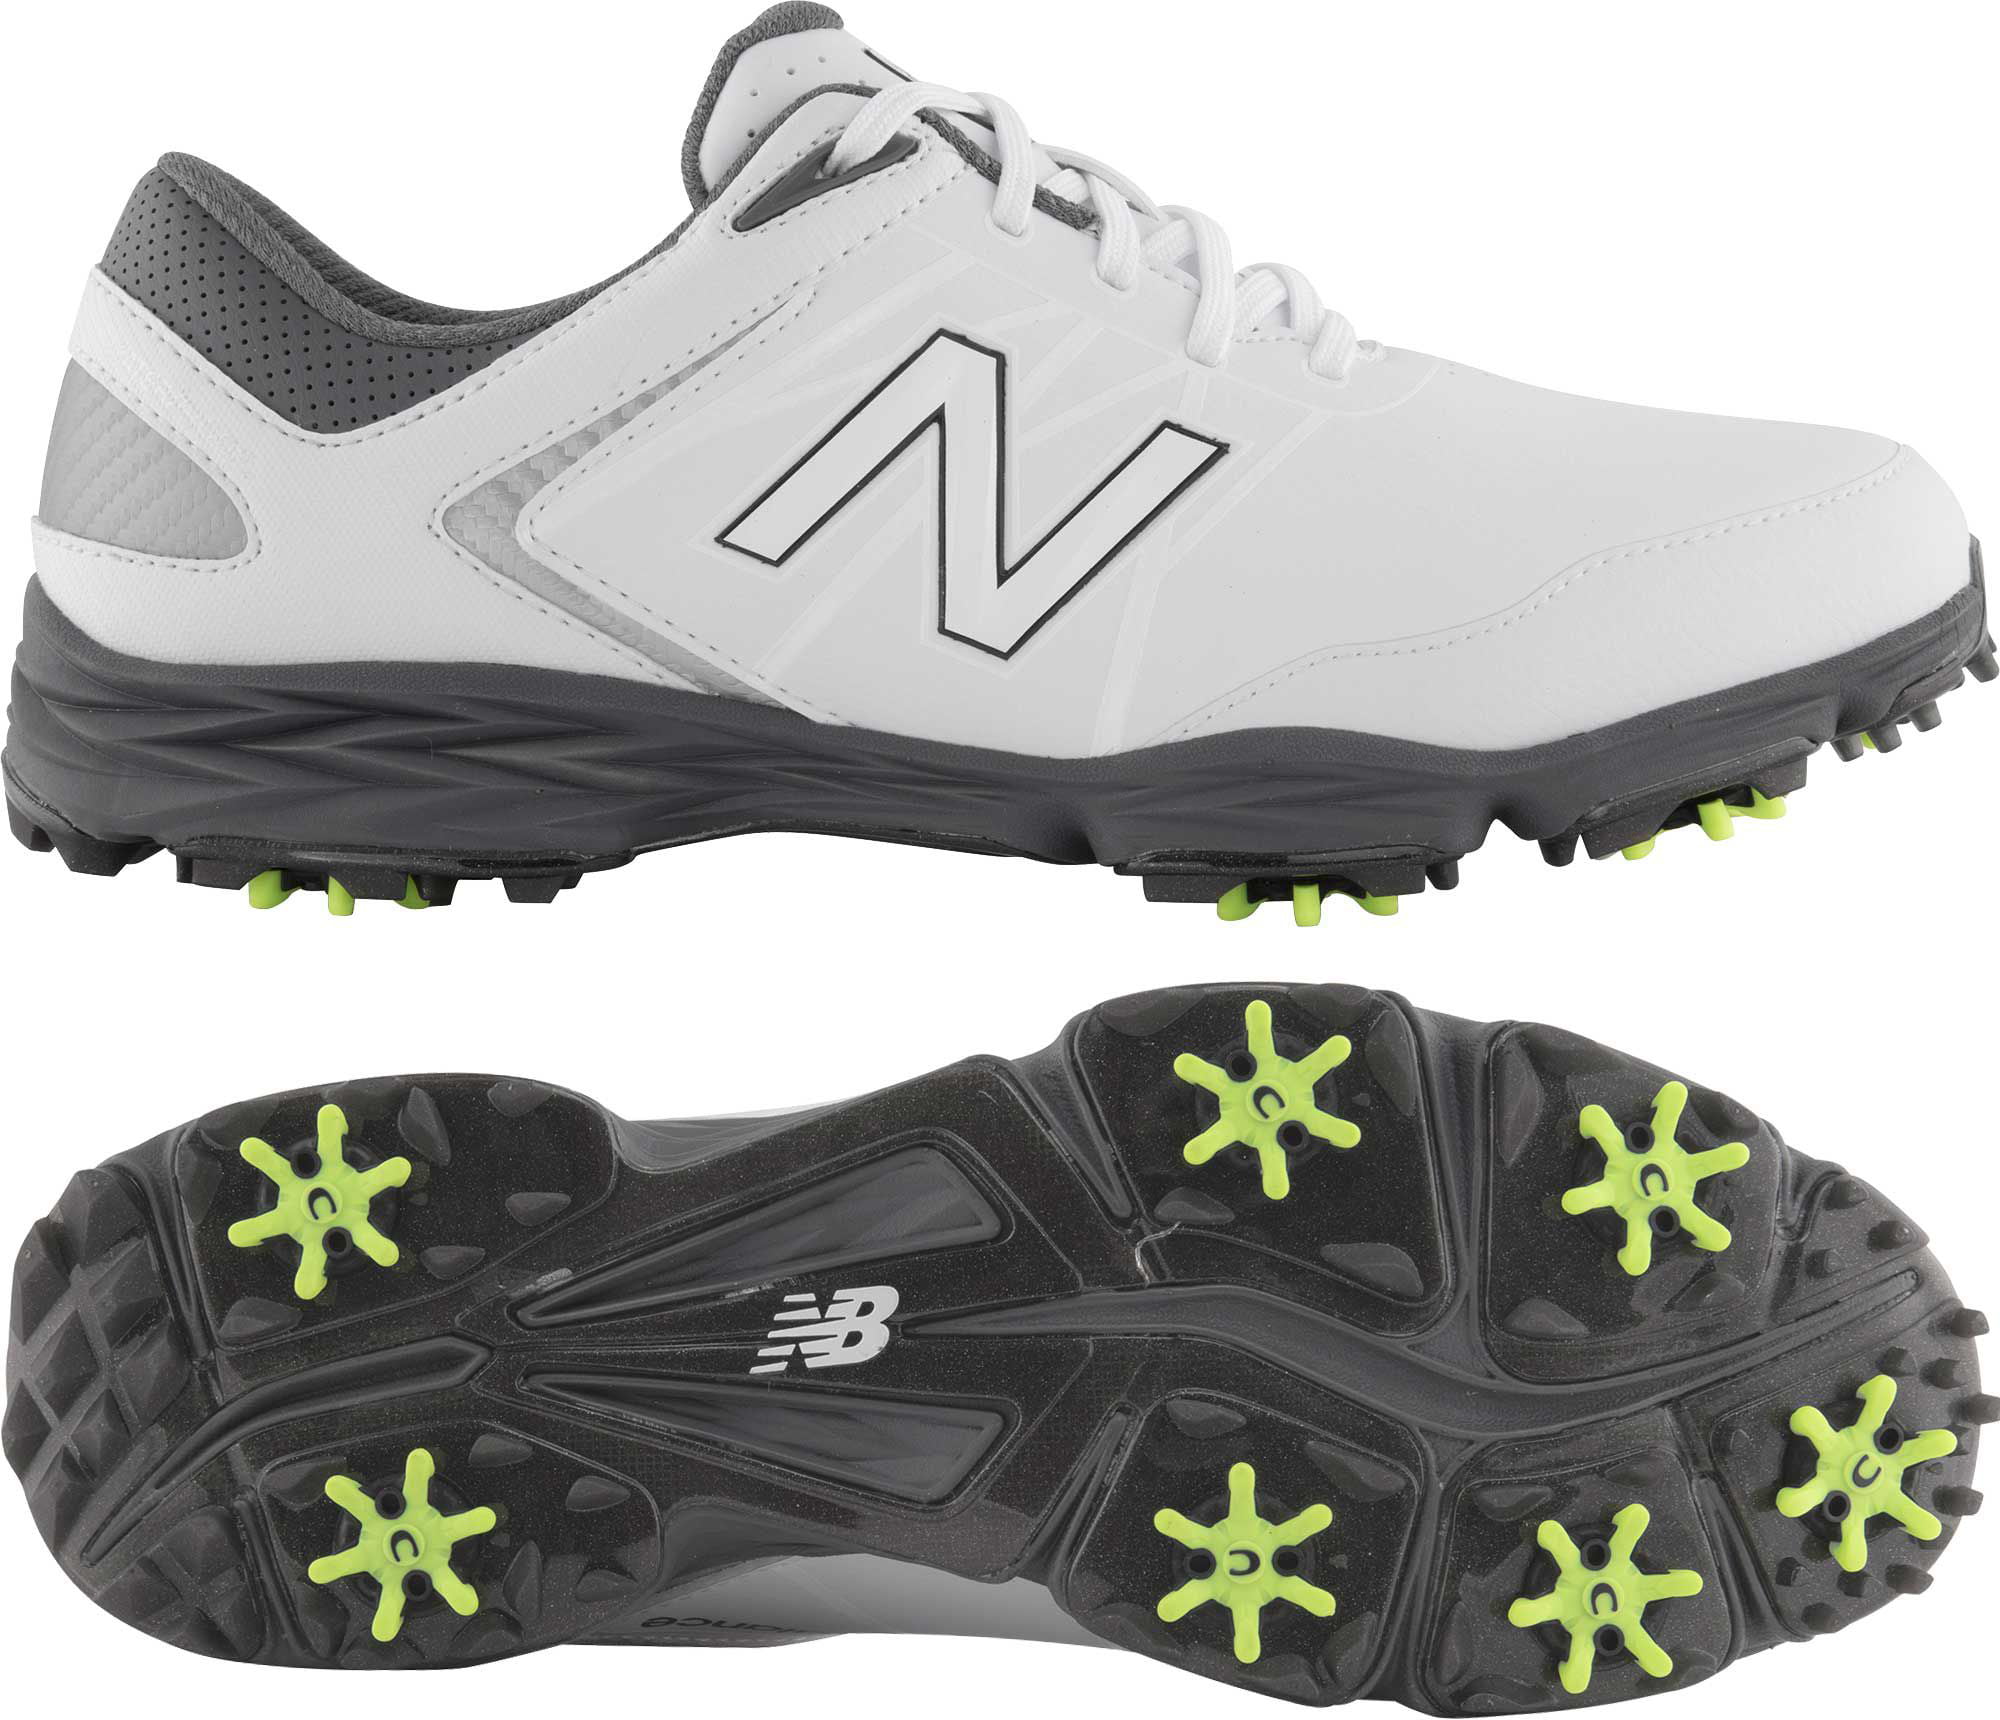 New Balance Men's Striker Golf Shoes 